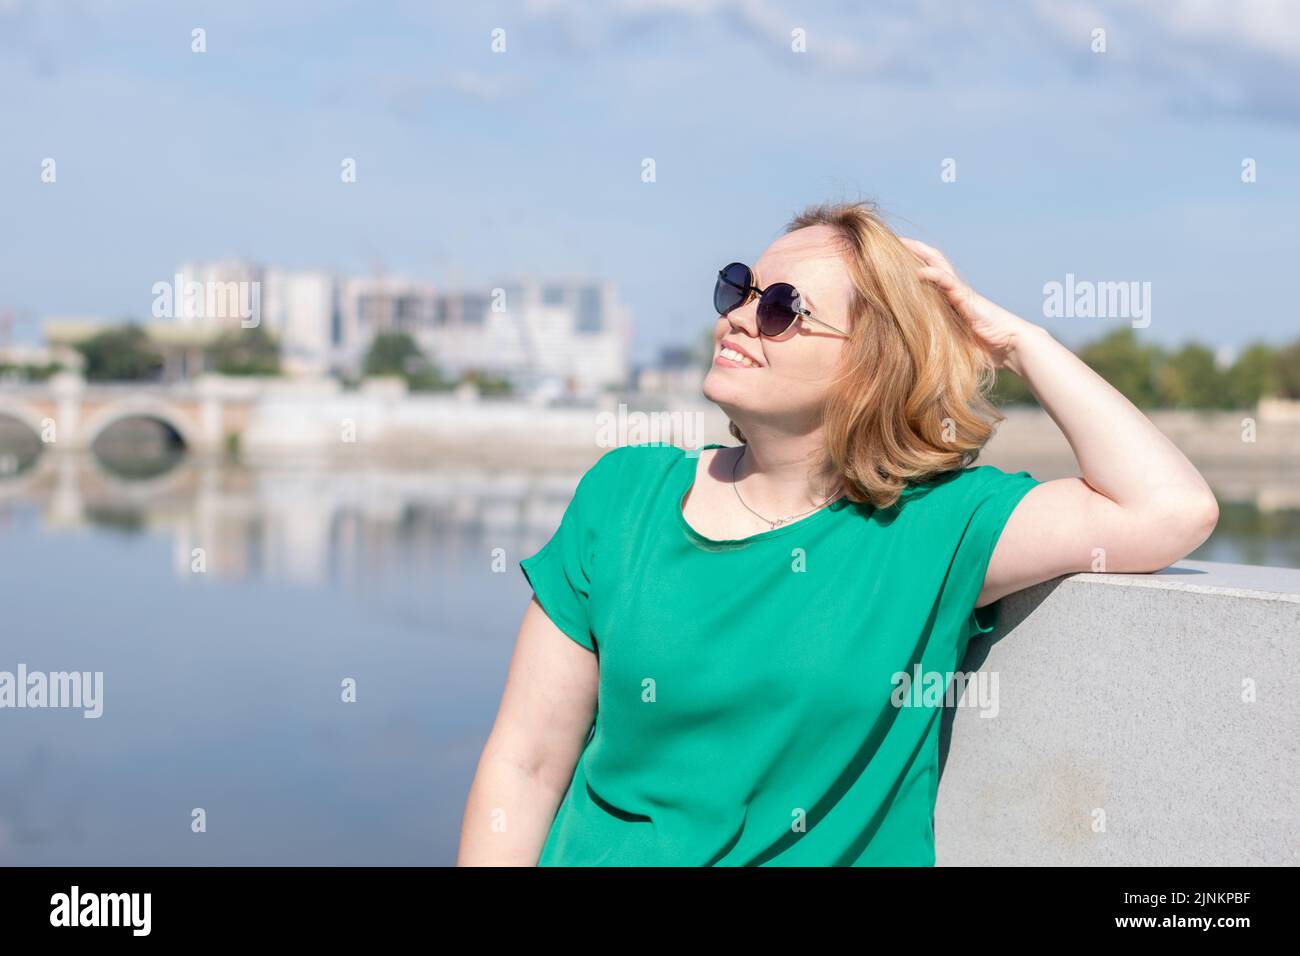 Porträt eines Mädchens in einer Sonnenbrille, eine grüne Bluse, die am Flussufer steht und ihr Haar mit der Hand hält. Ein Mädchen geht durch die Straßen des Cit Stockfoto